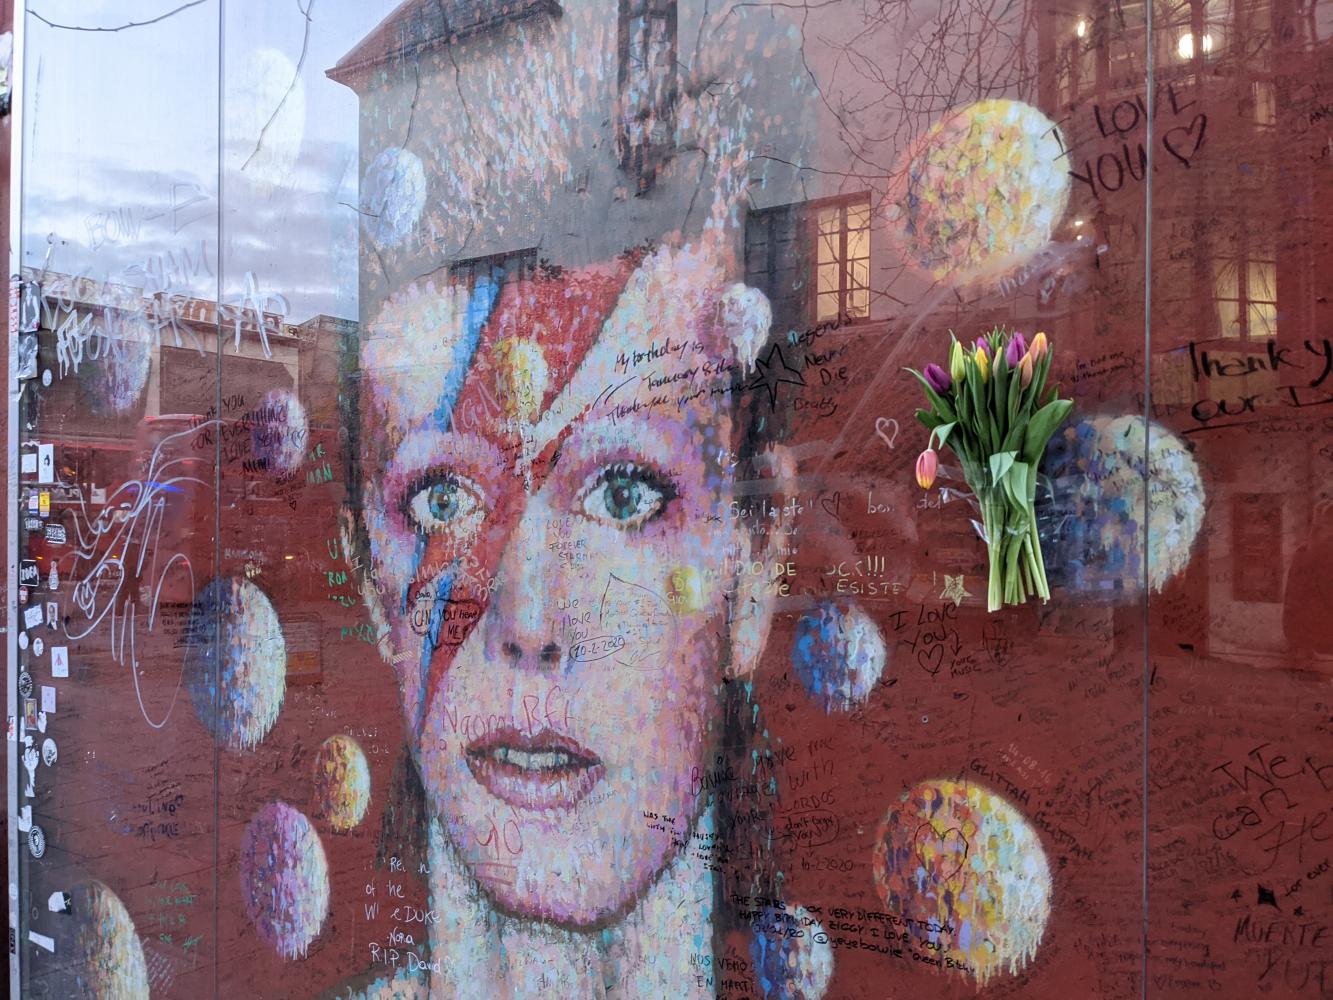 Blumen und Botschaften am David-Bowie-Denkmal des australischen Künstlers James Cochran (Jimmy C) im Stadtteil Brixton, London